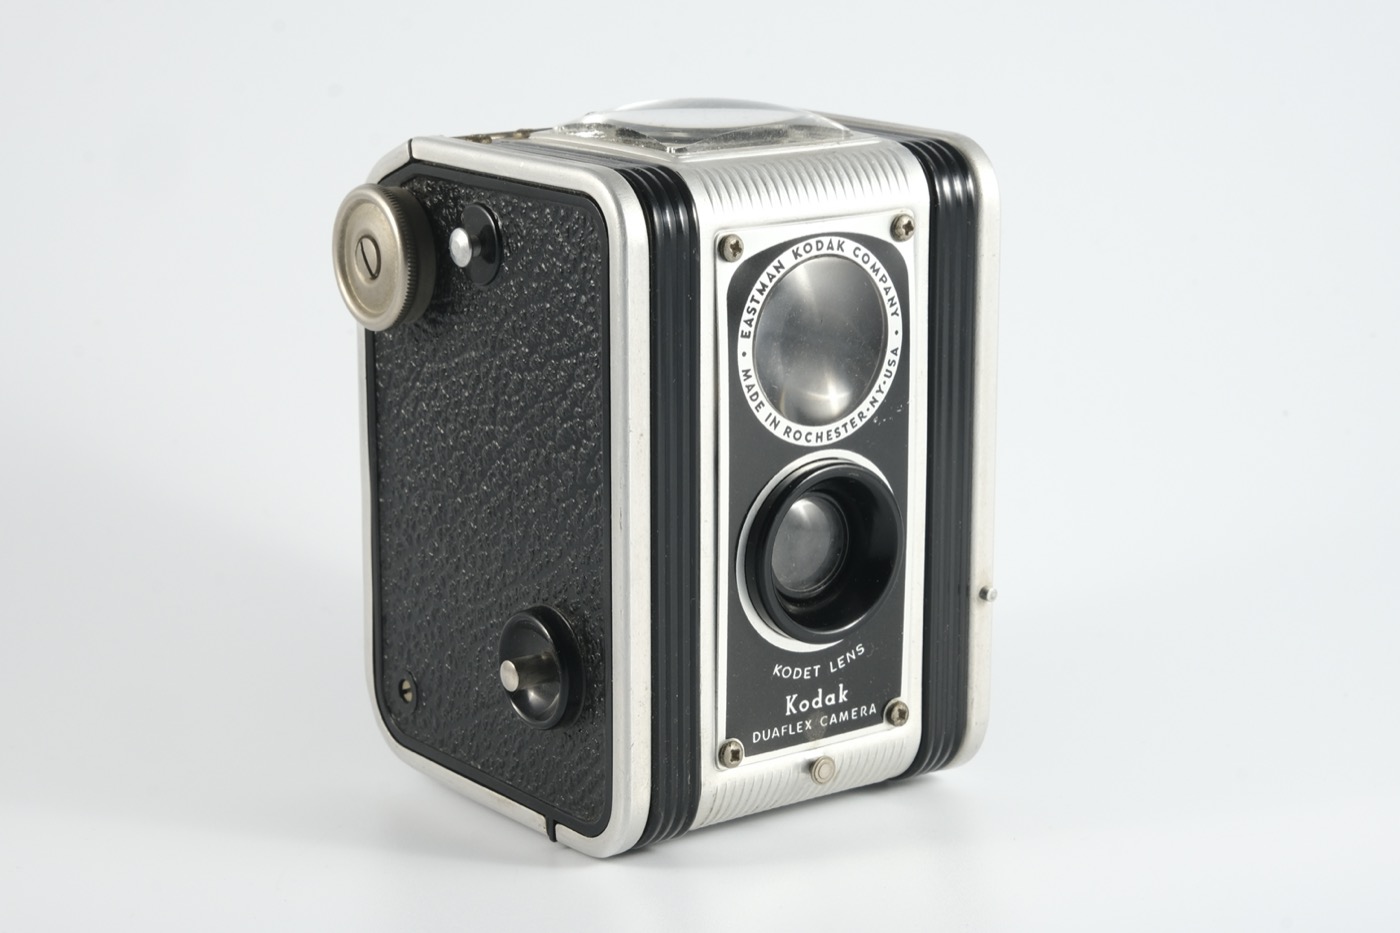 Kodak Duaflex camera